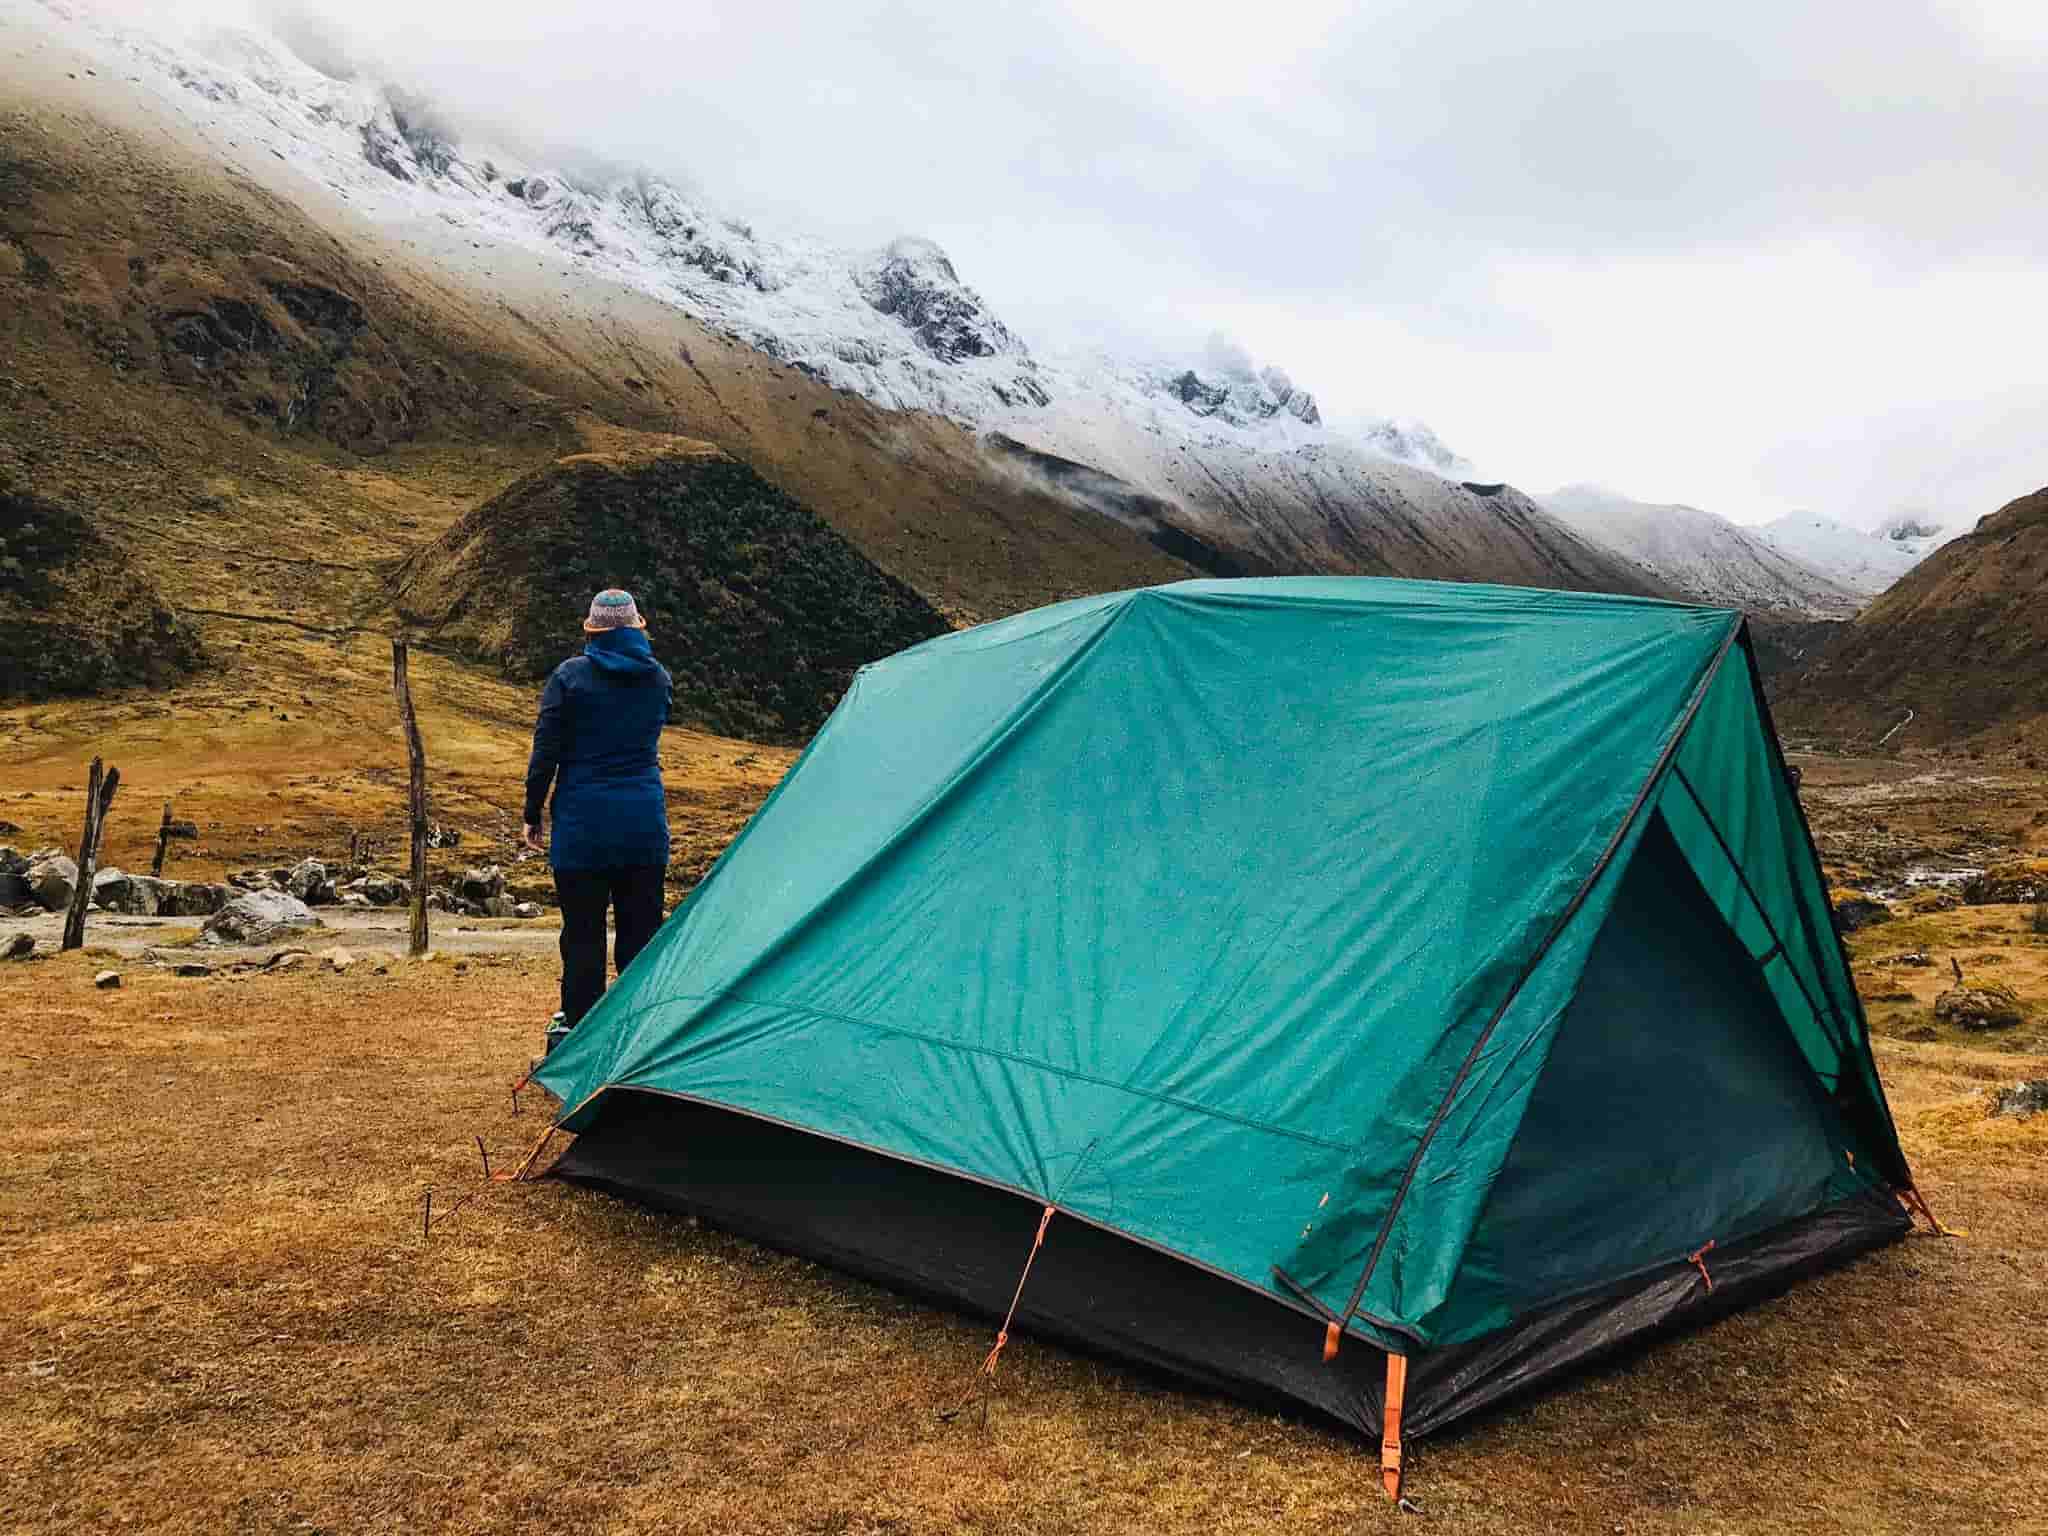 Camping out in Nature - Ultimate Salkantay Trek